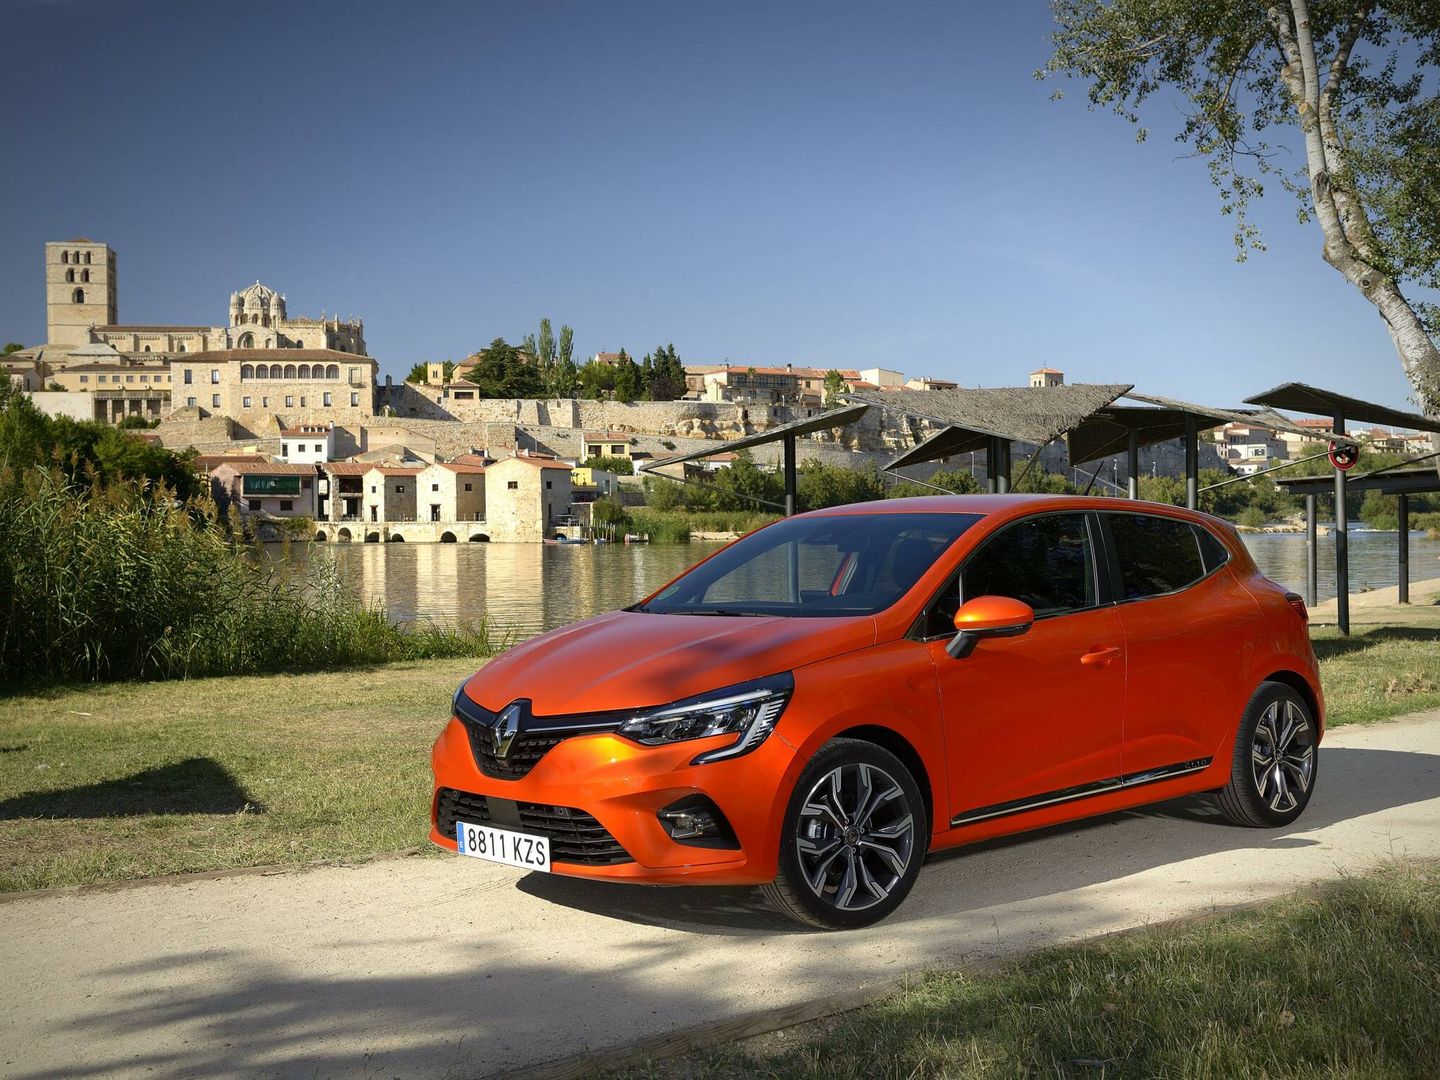 El Renault Clio dCi, de motor diésel, presume de emisiones muy bajas, pero no tiene etiqueta eco.